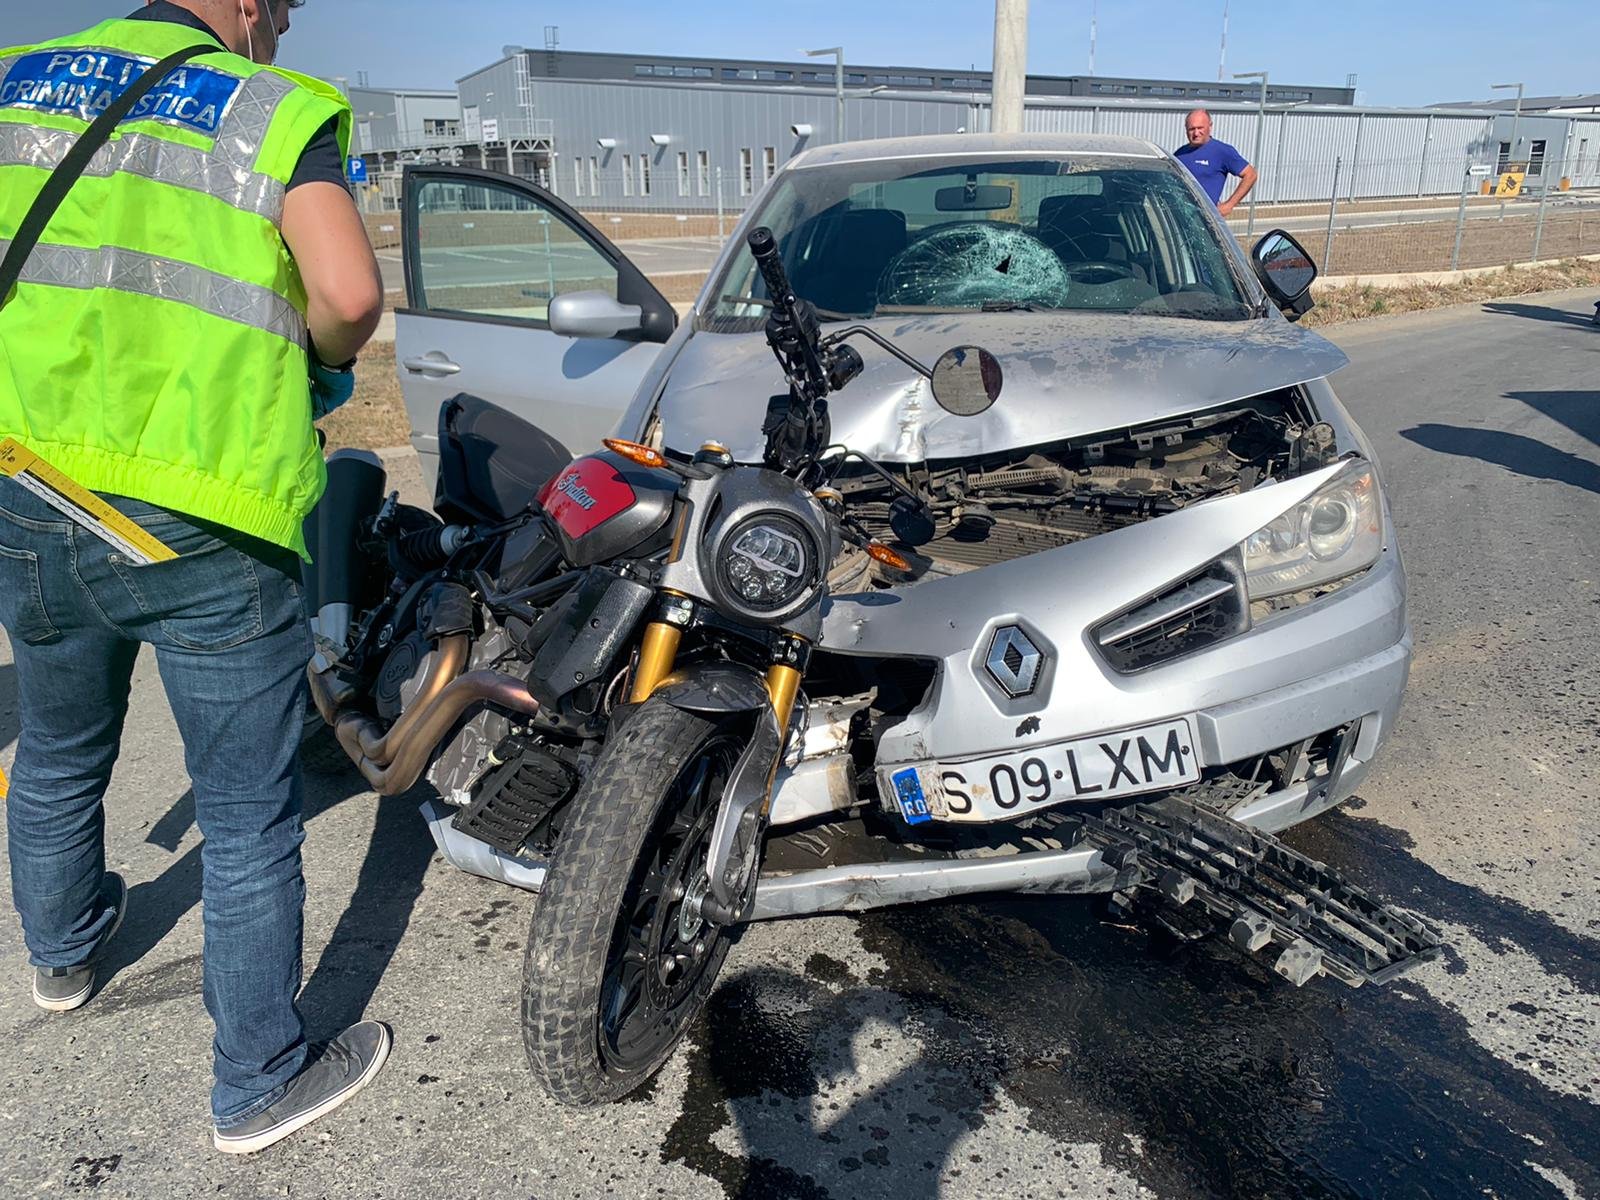  Impact violent între o motocicletă și un autoturism pe un drum din județul Iași